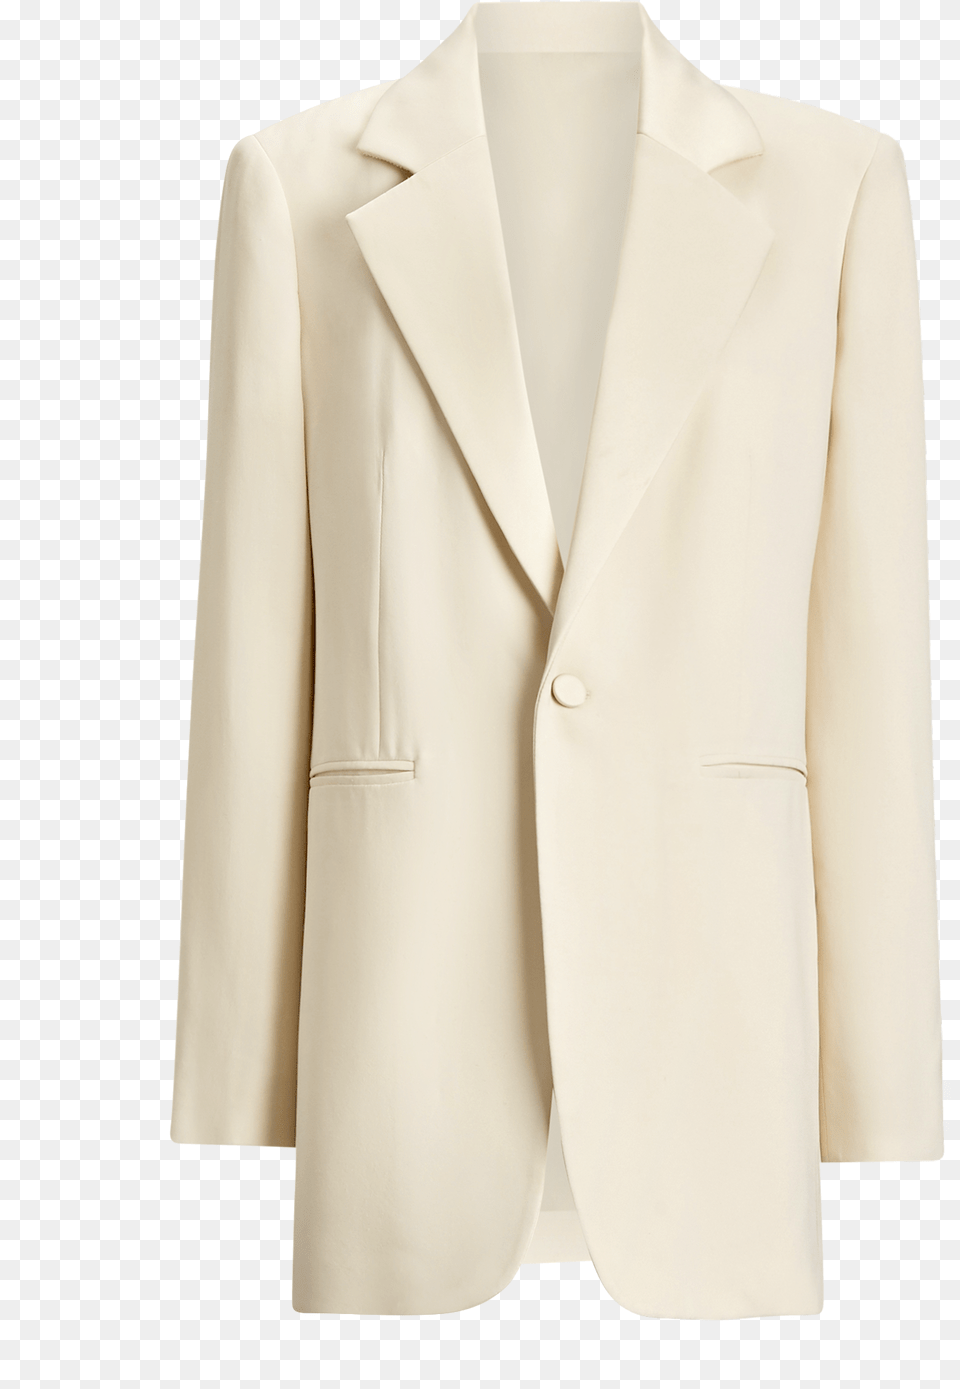 Joseph Stearn Fluid Tuxedo Jacket In Sand Tuxedo, Blazer, Clothing, Coat, Formal Wear Free Png